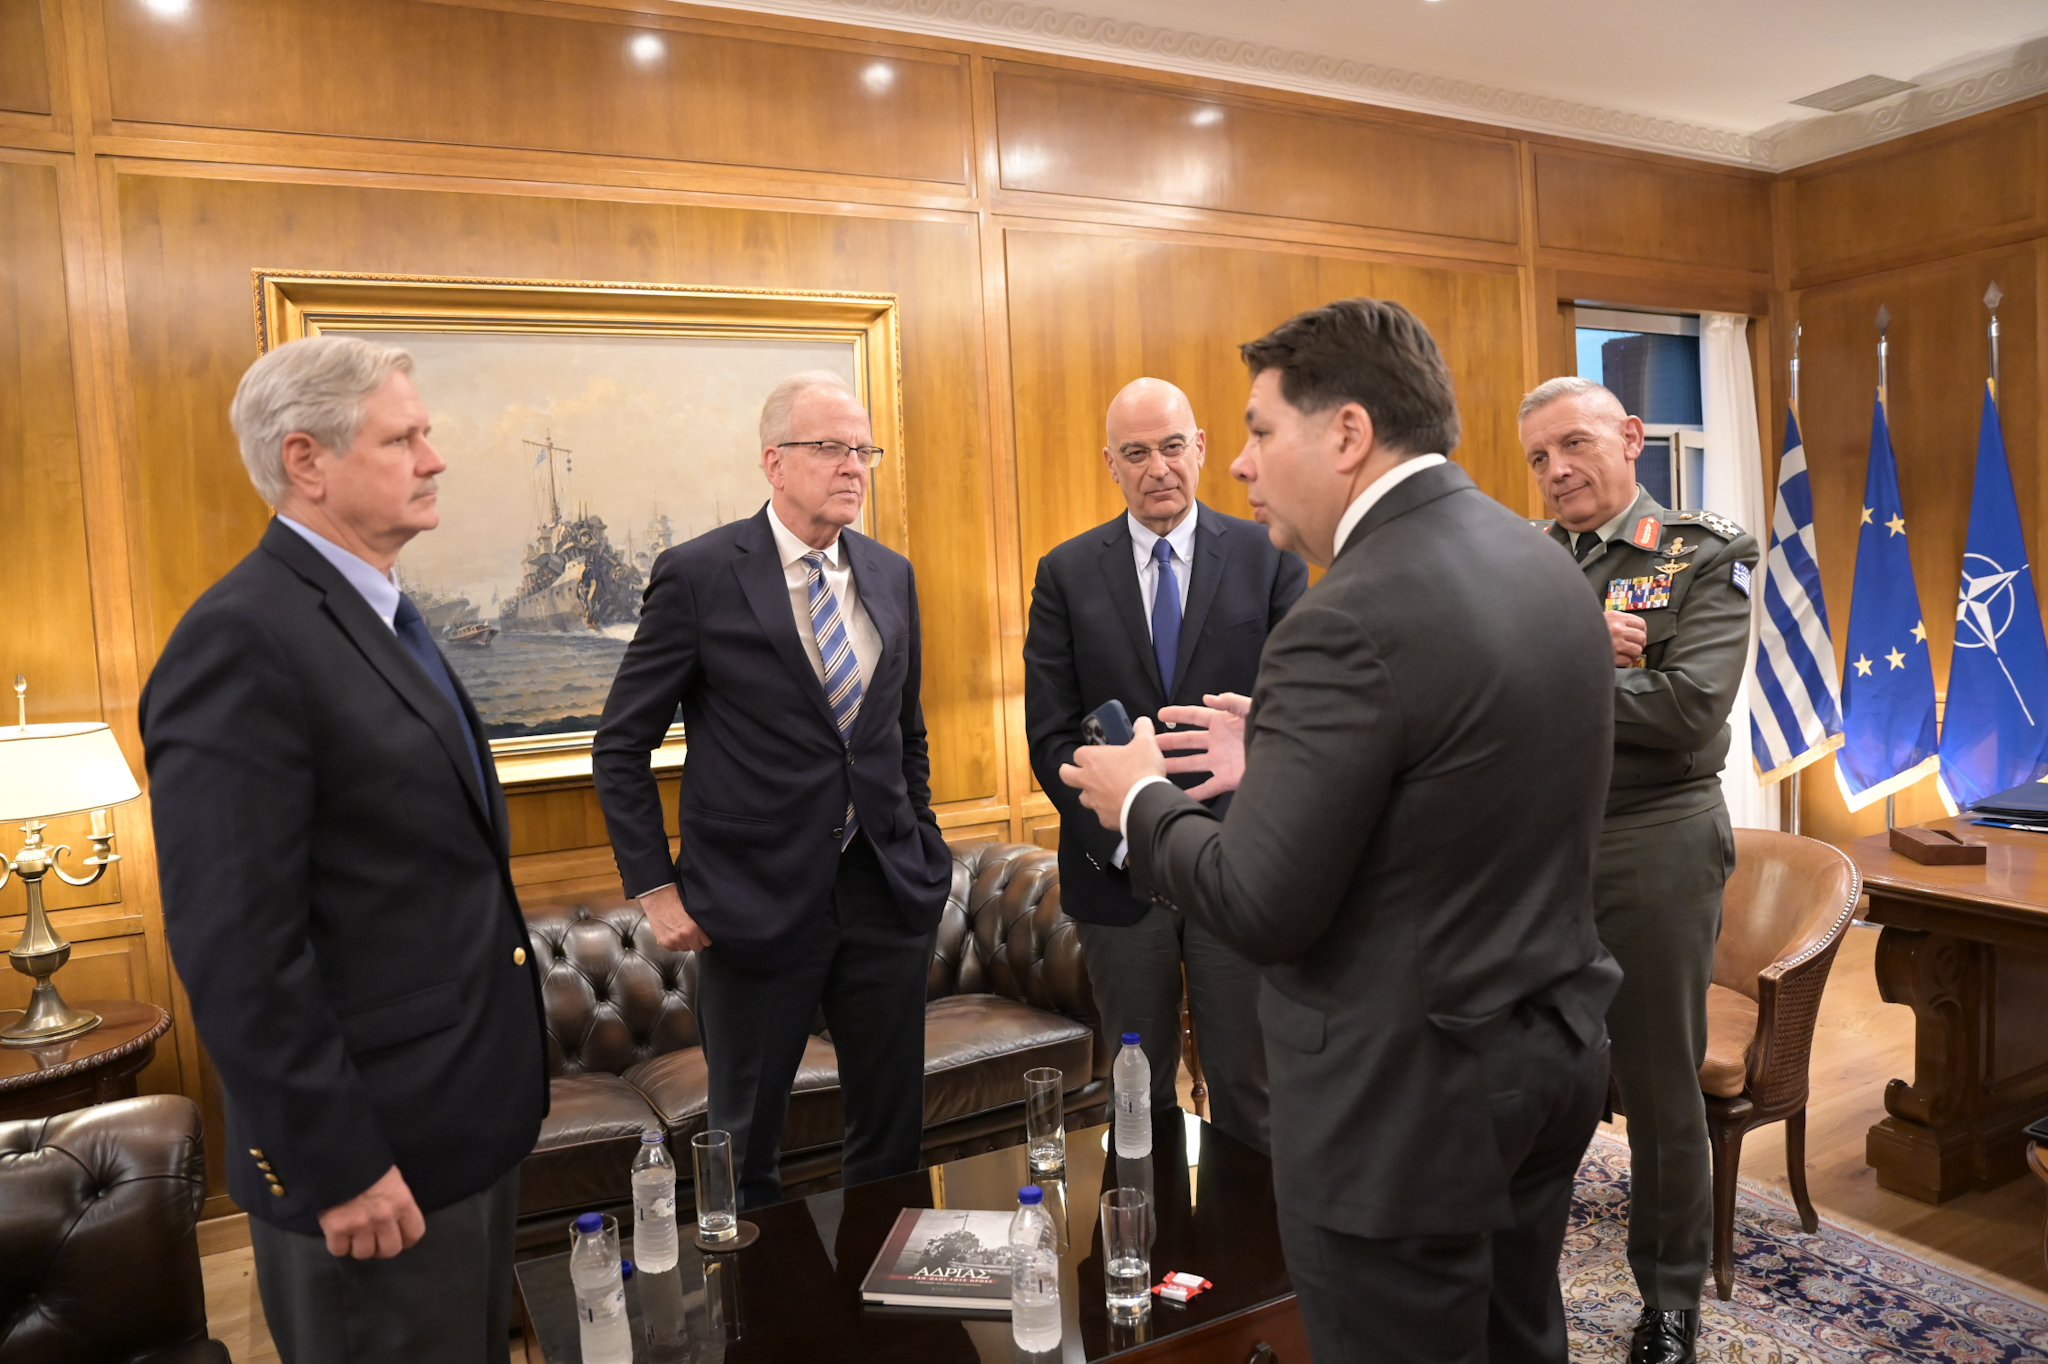 Ν. Δένδιας: Συζήτηση με Γερουσιαστές των ΗΠΑ για Μέση Ανατολή και Ουκρανία